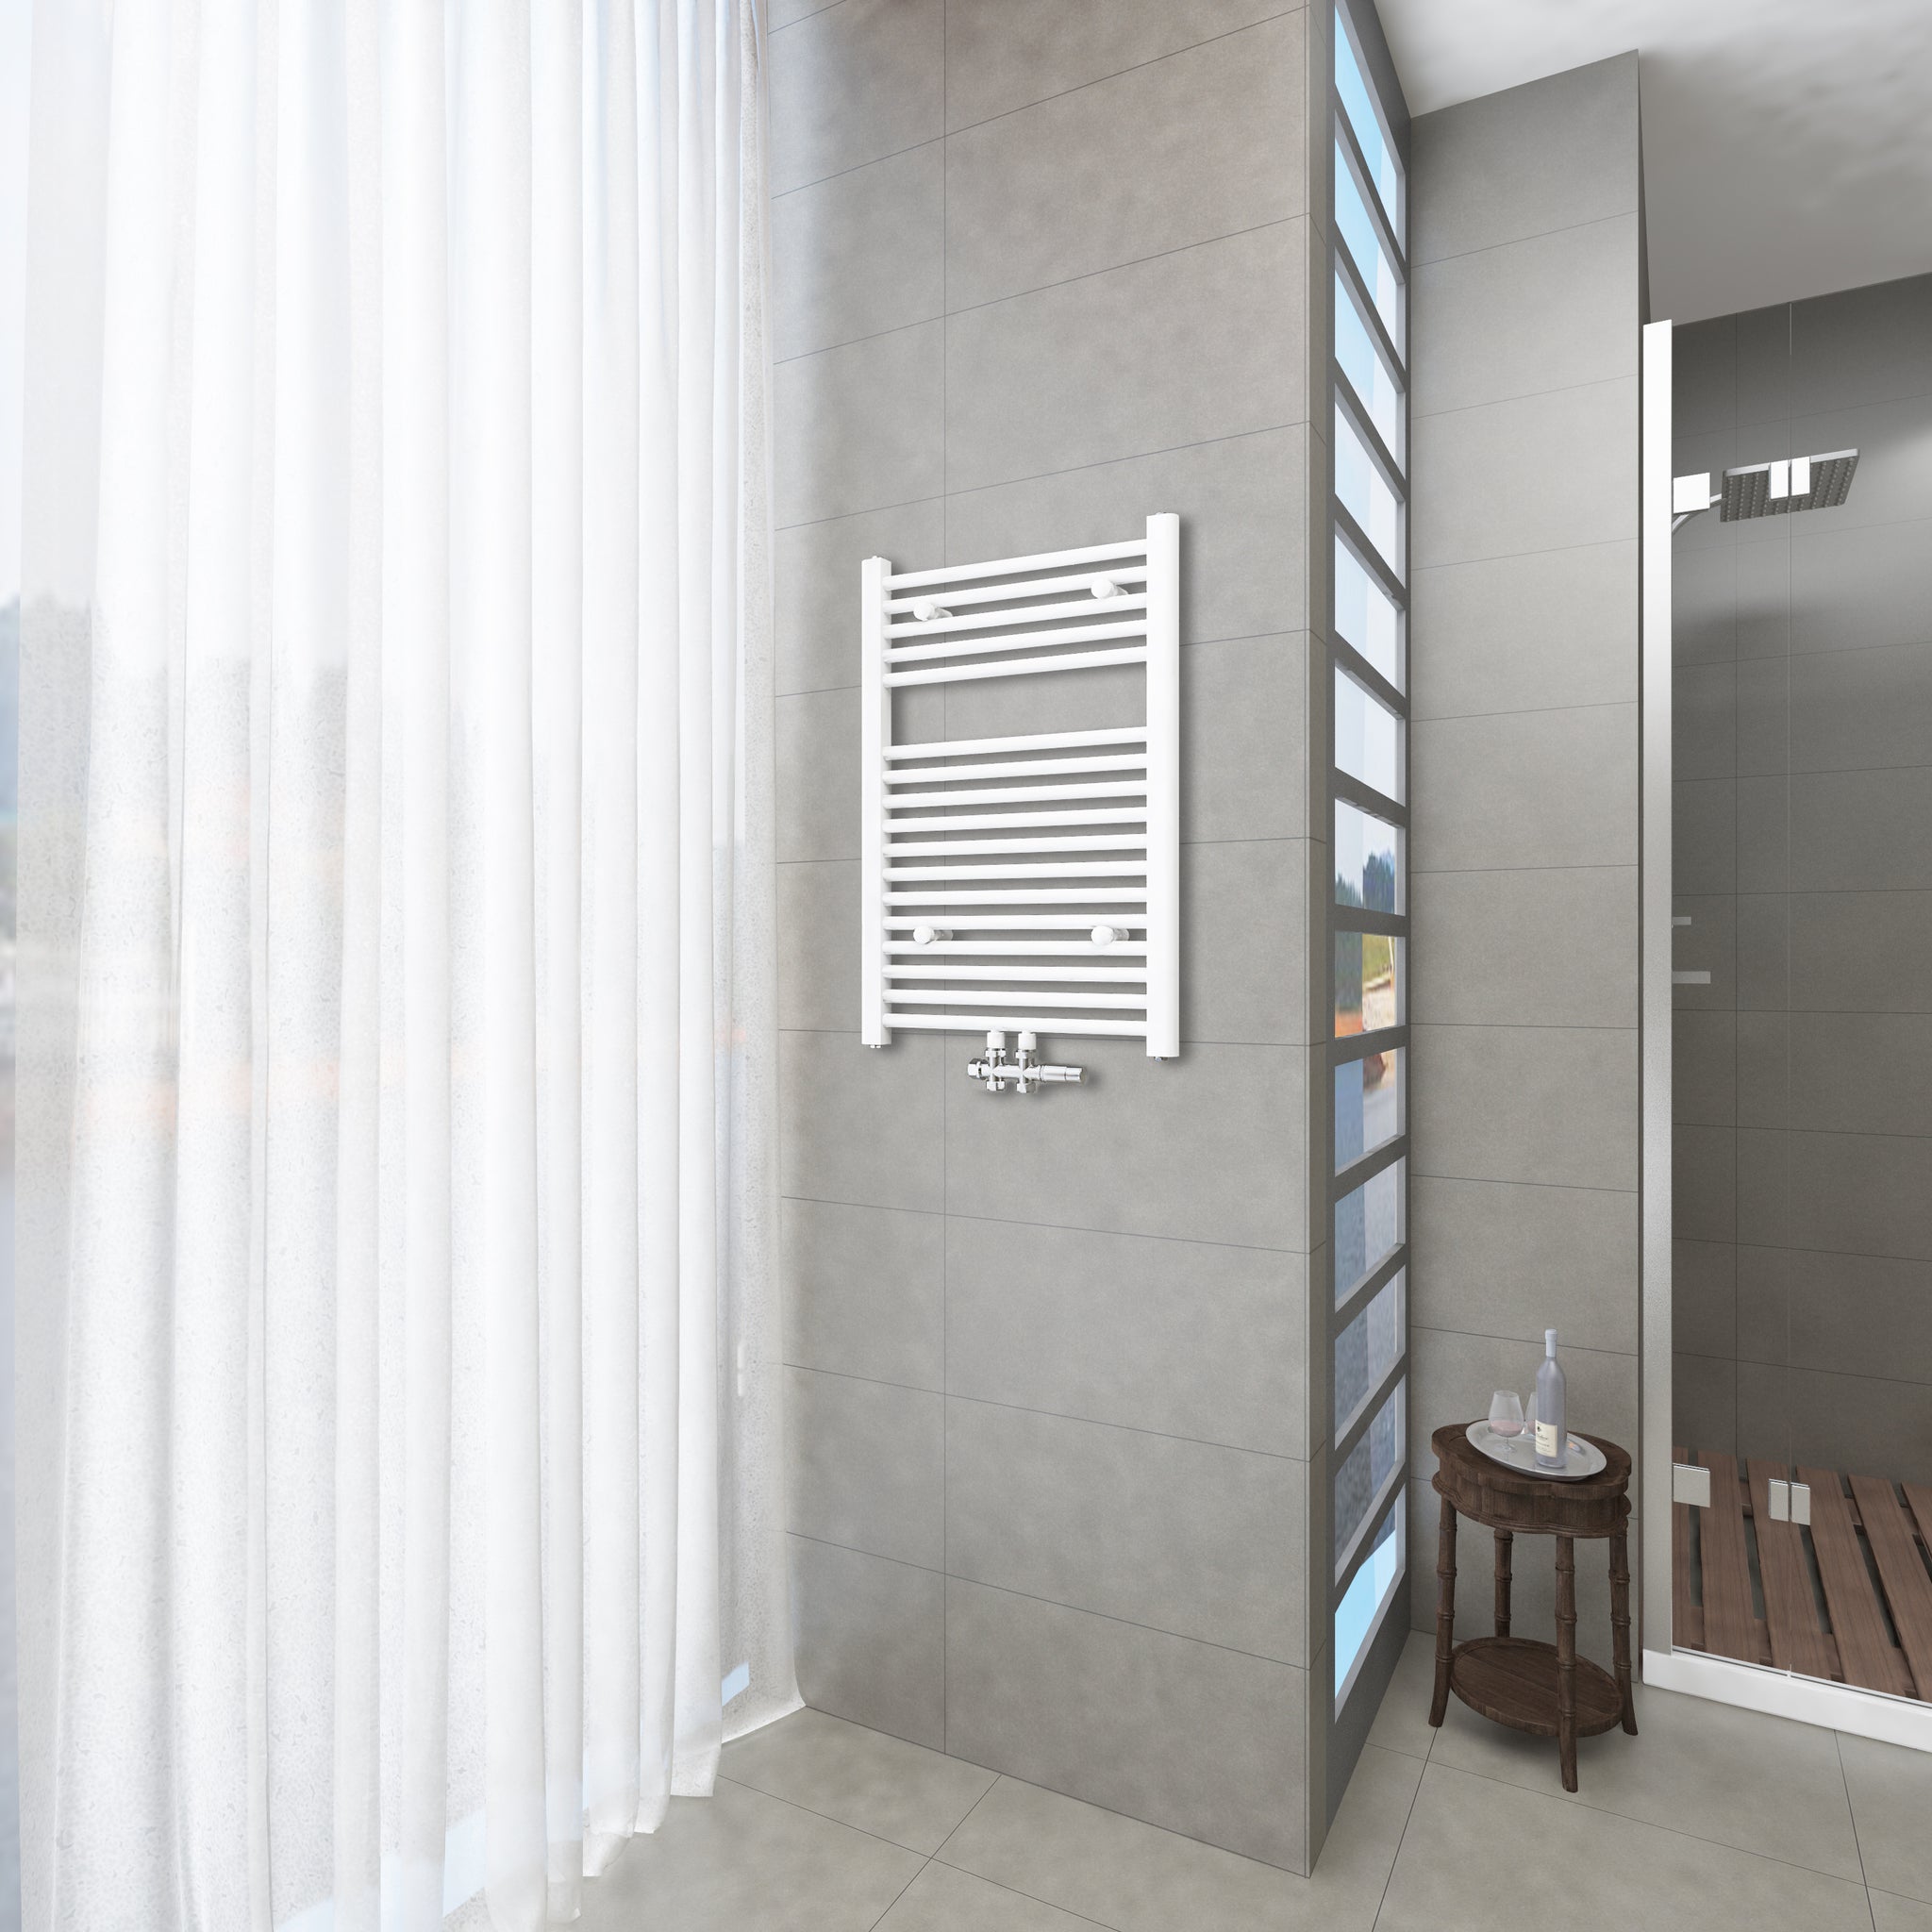 Badheizkörper Weiß - 80x60 CM  Heizkörper und Handtuchtrockner in einem - Mittelanschluss - Rauchfreie Kohleheizung für das Badezimmer